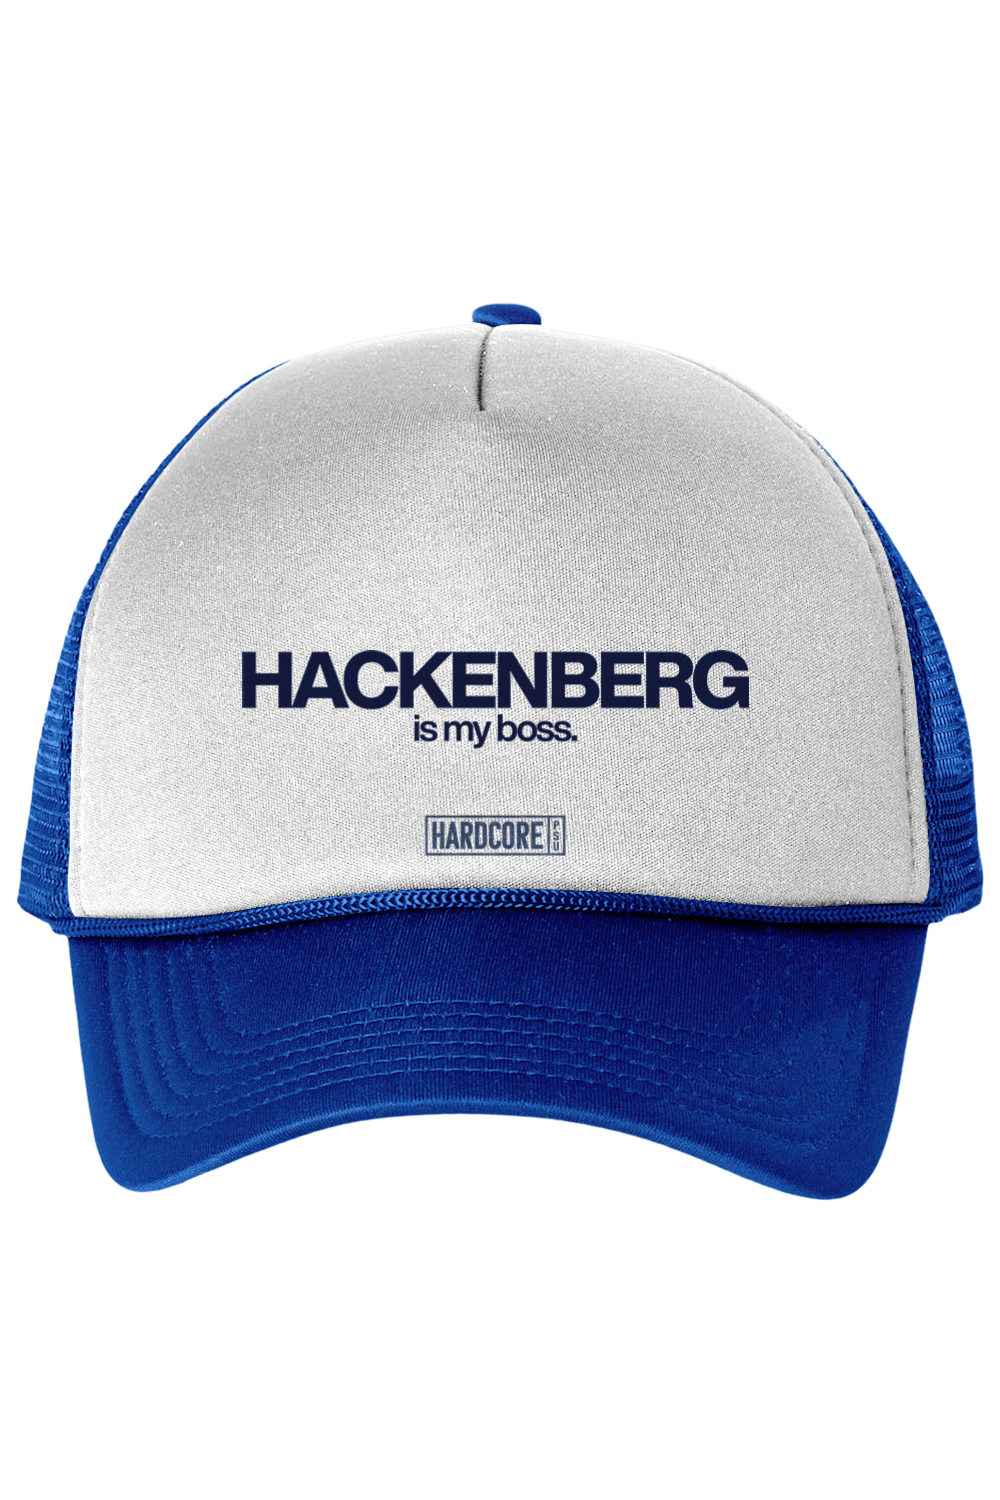 Hackenberg Is My Boss Trucker Cap